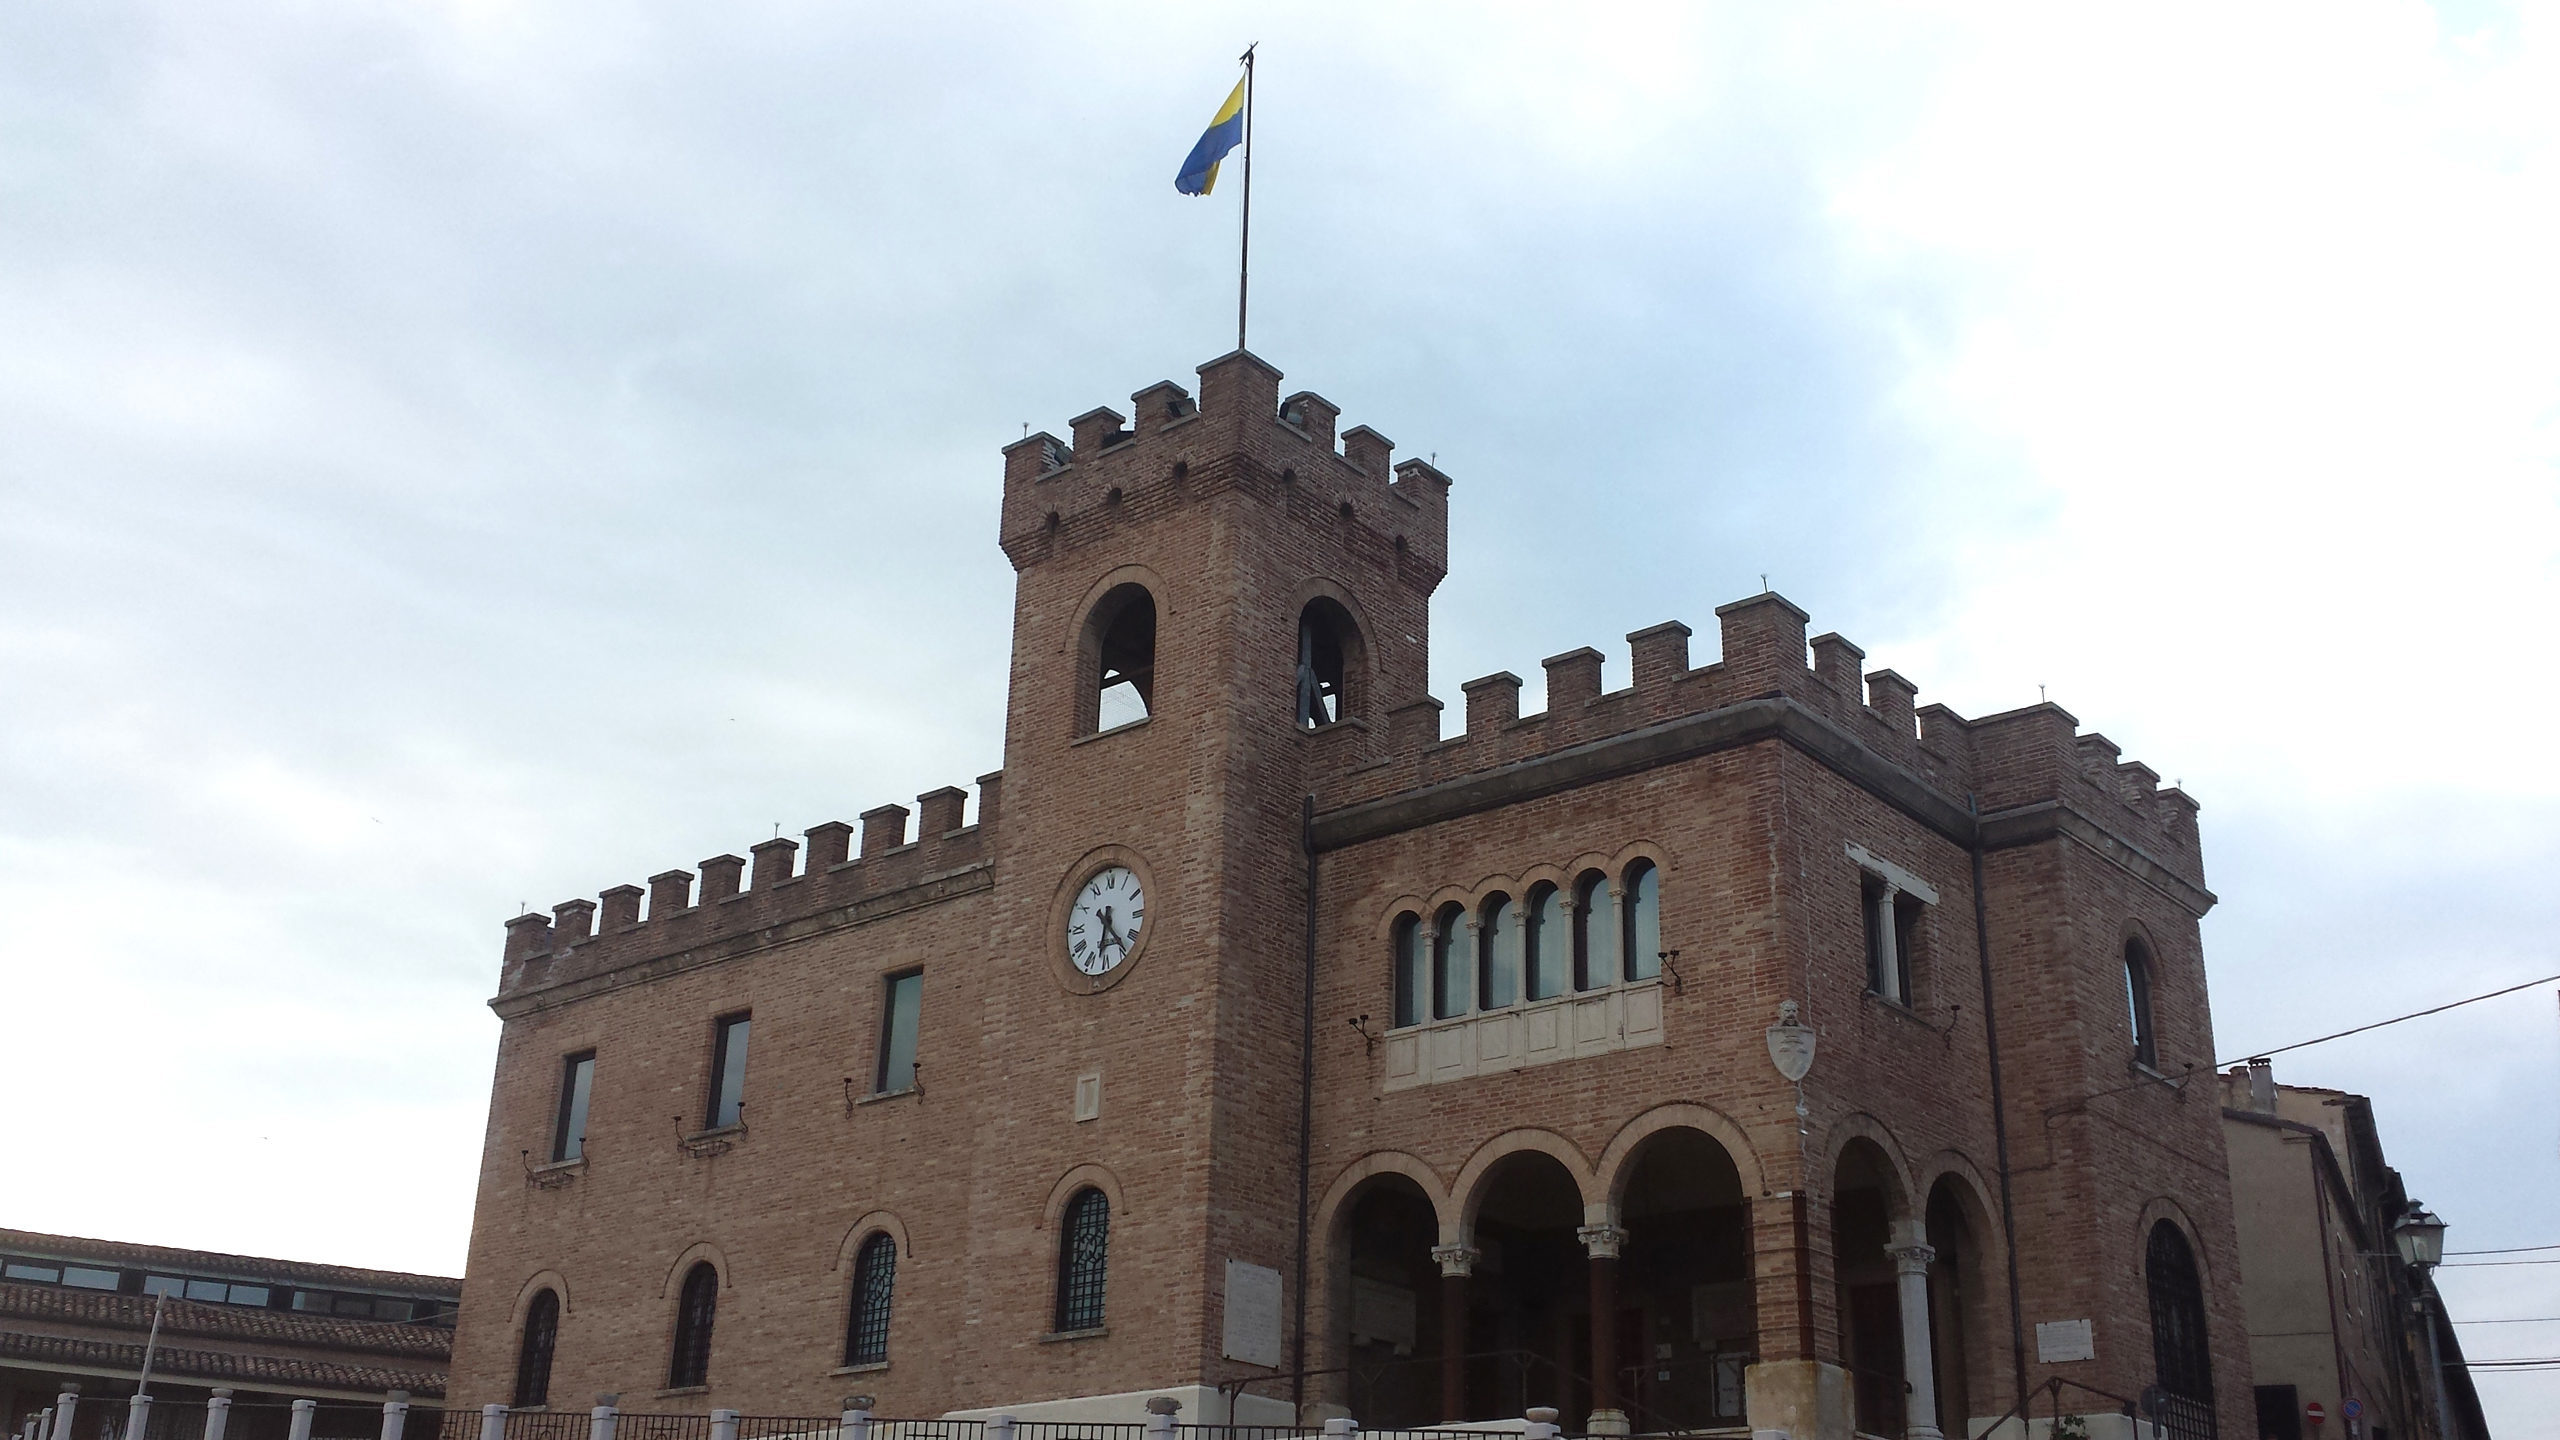 Palazzo comunale di Mondolfo